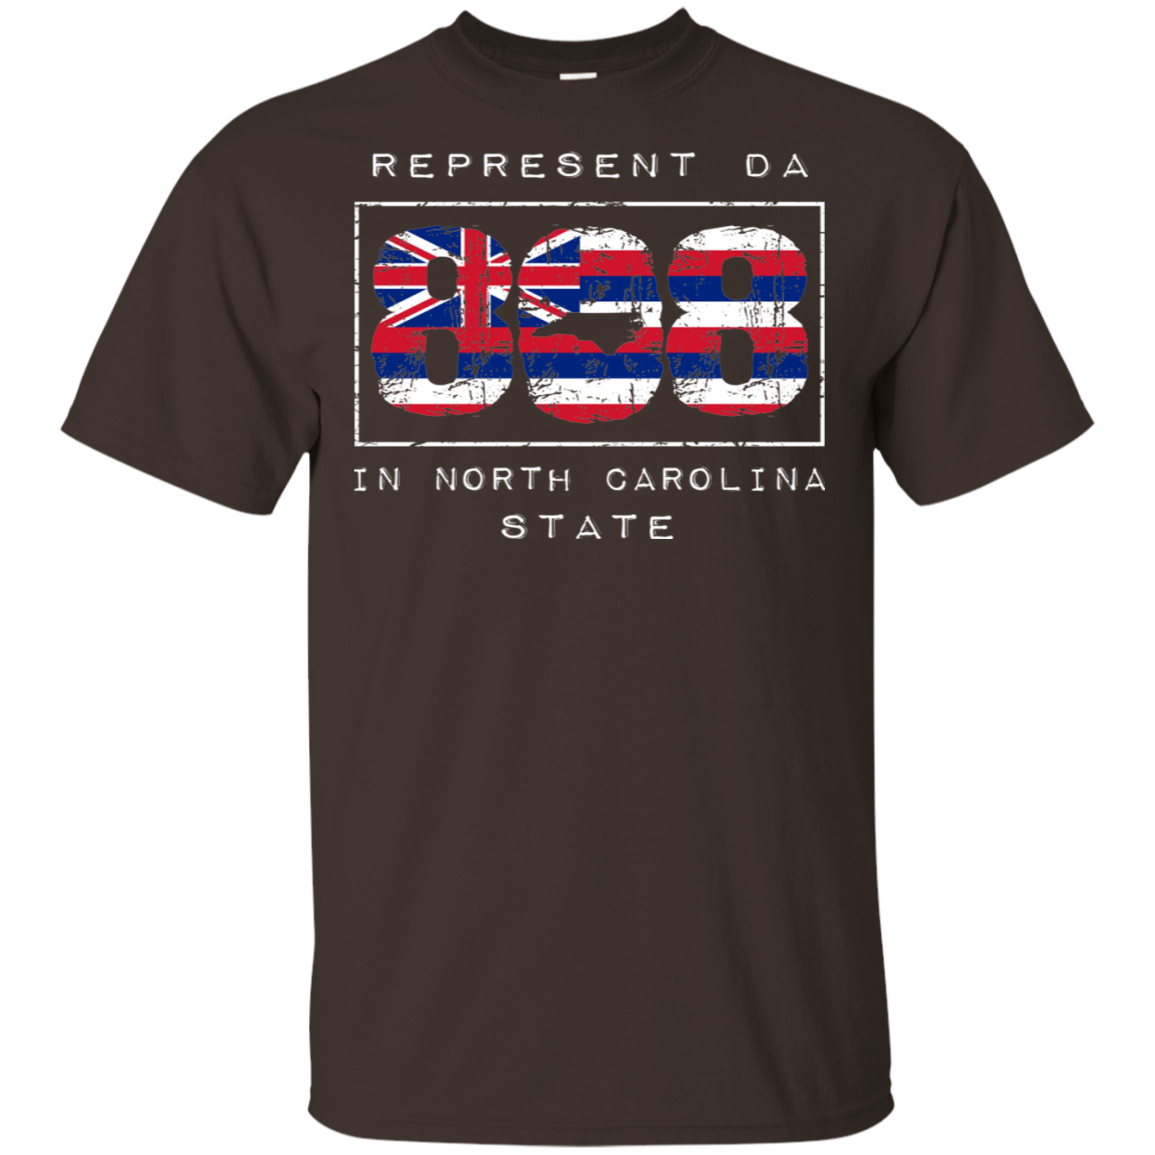 Rep Da 808 In North Carolina State Ultra Cotton T-Shirt, T-Shirts, Hawaii Nei All Day